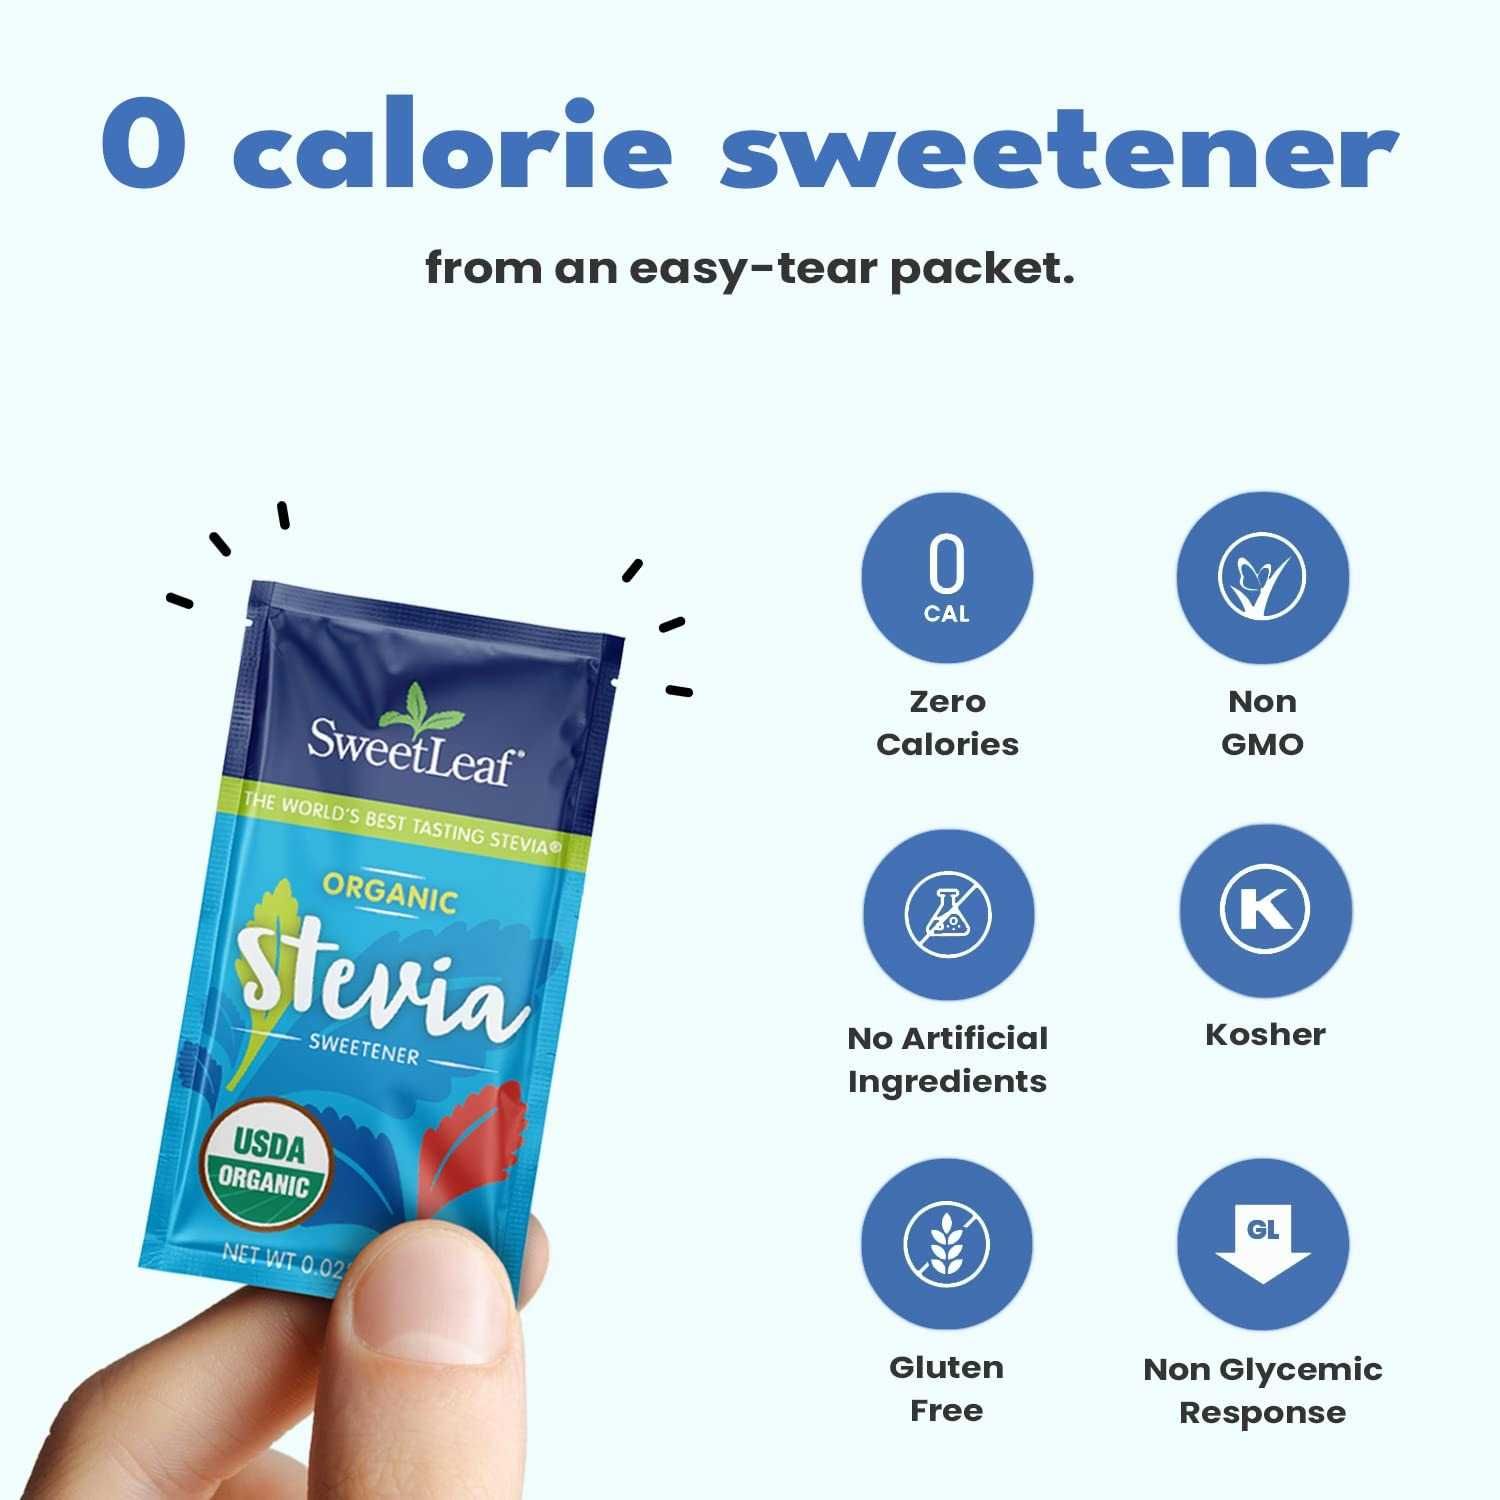 Sweet Leaf Stevia oрганическая стевия подсластитель 70 пакетиков 56,7г